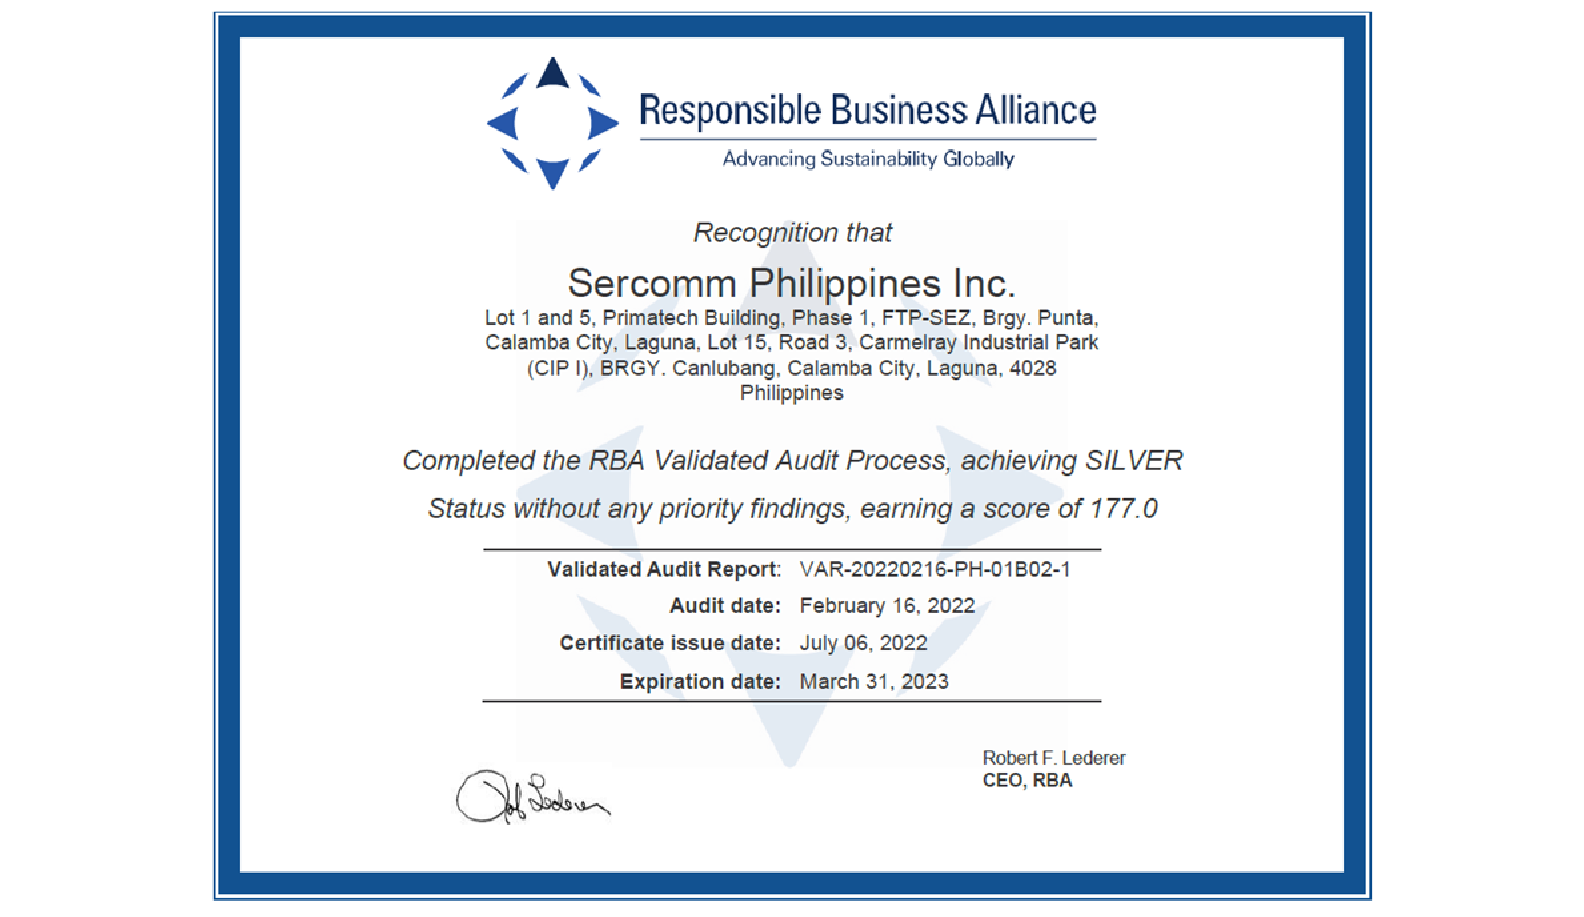 菲律賓工廠於2022年度獲得RBA責任商業聯盟(Responsible Business Alliance, RBA)稽核評鑑銀牌等級